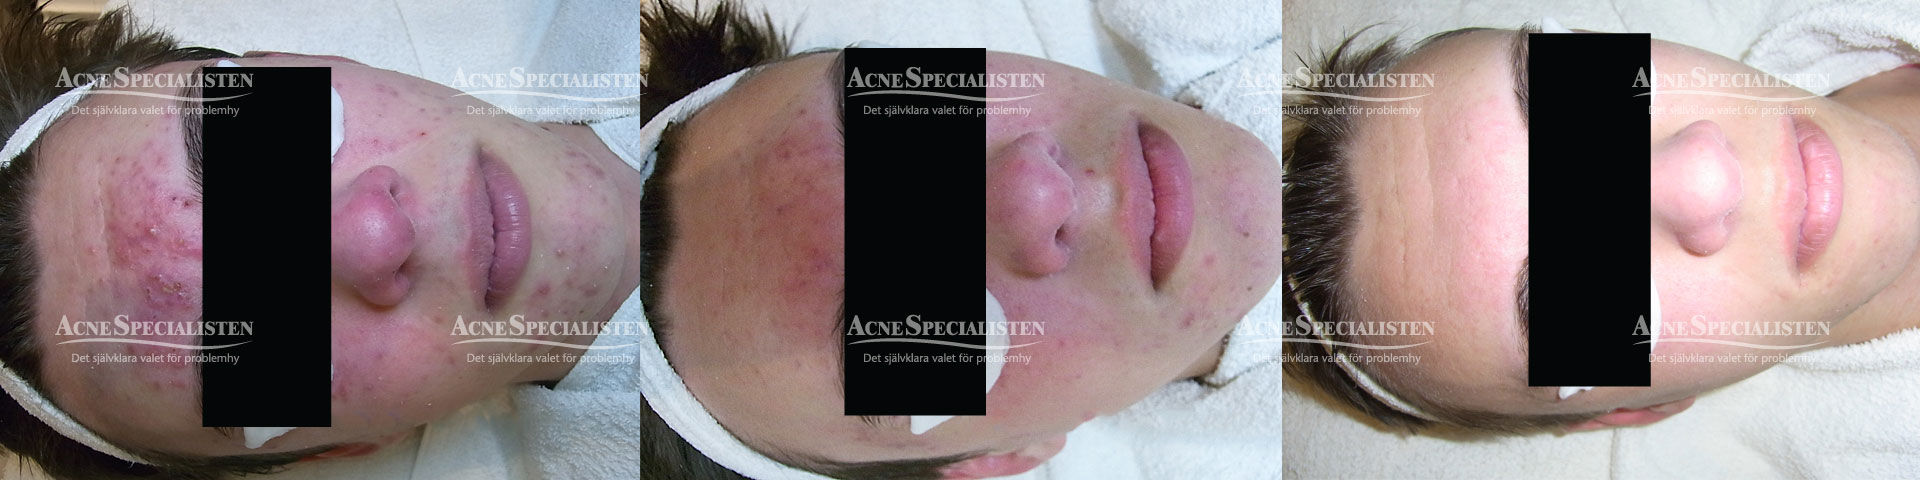 svår acne hudproblem före och efter bilder